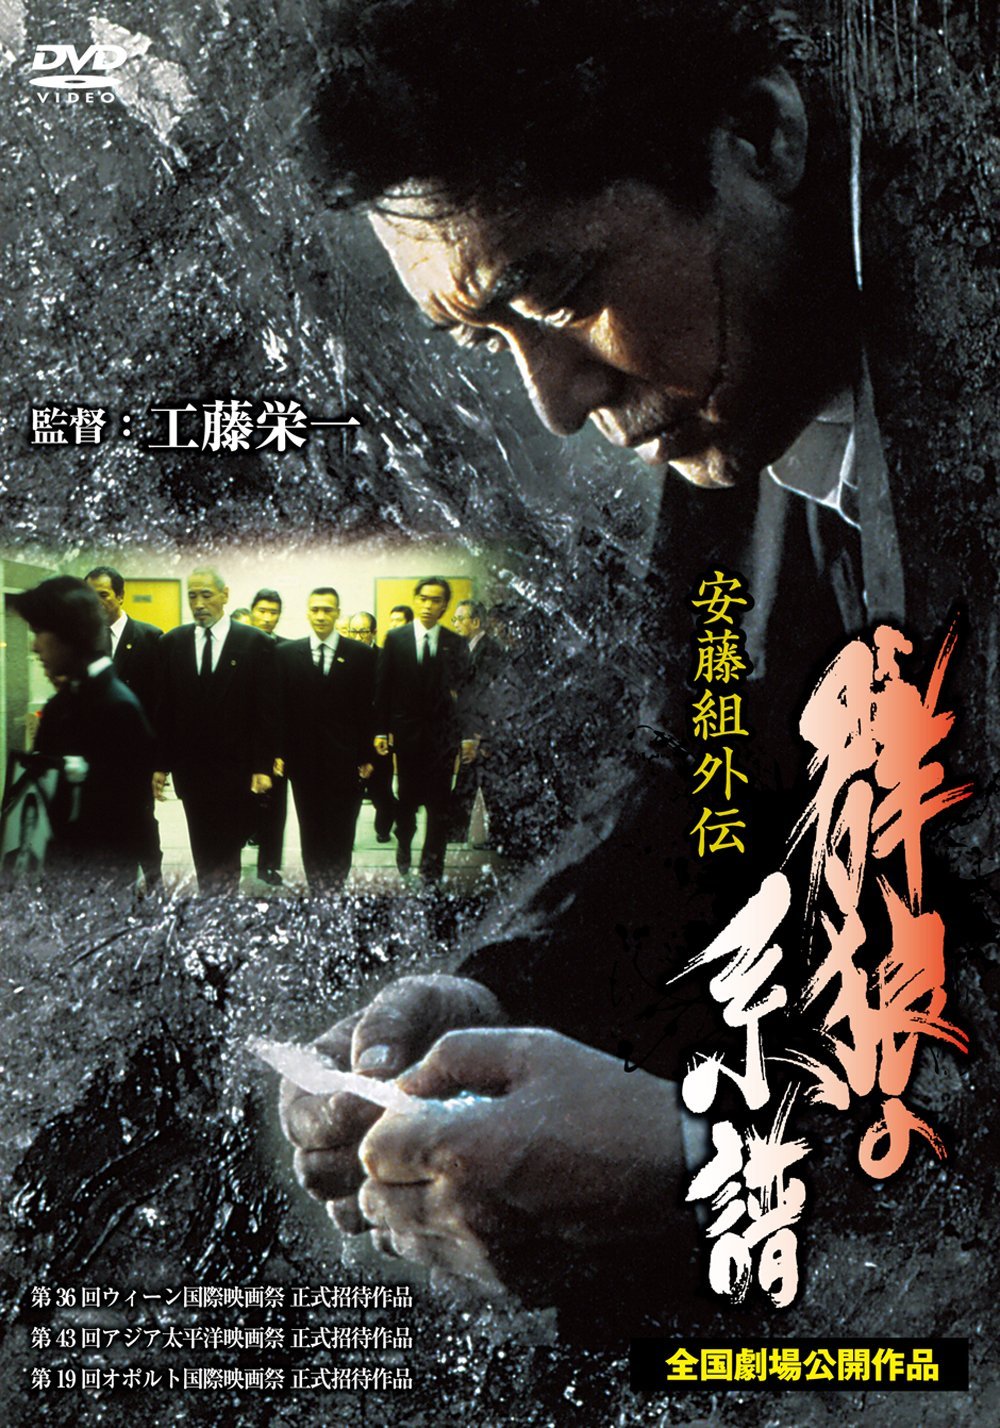 Gunro no keifu (1998) Screenshot 1